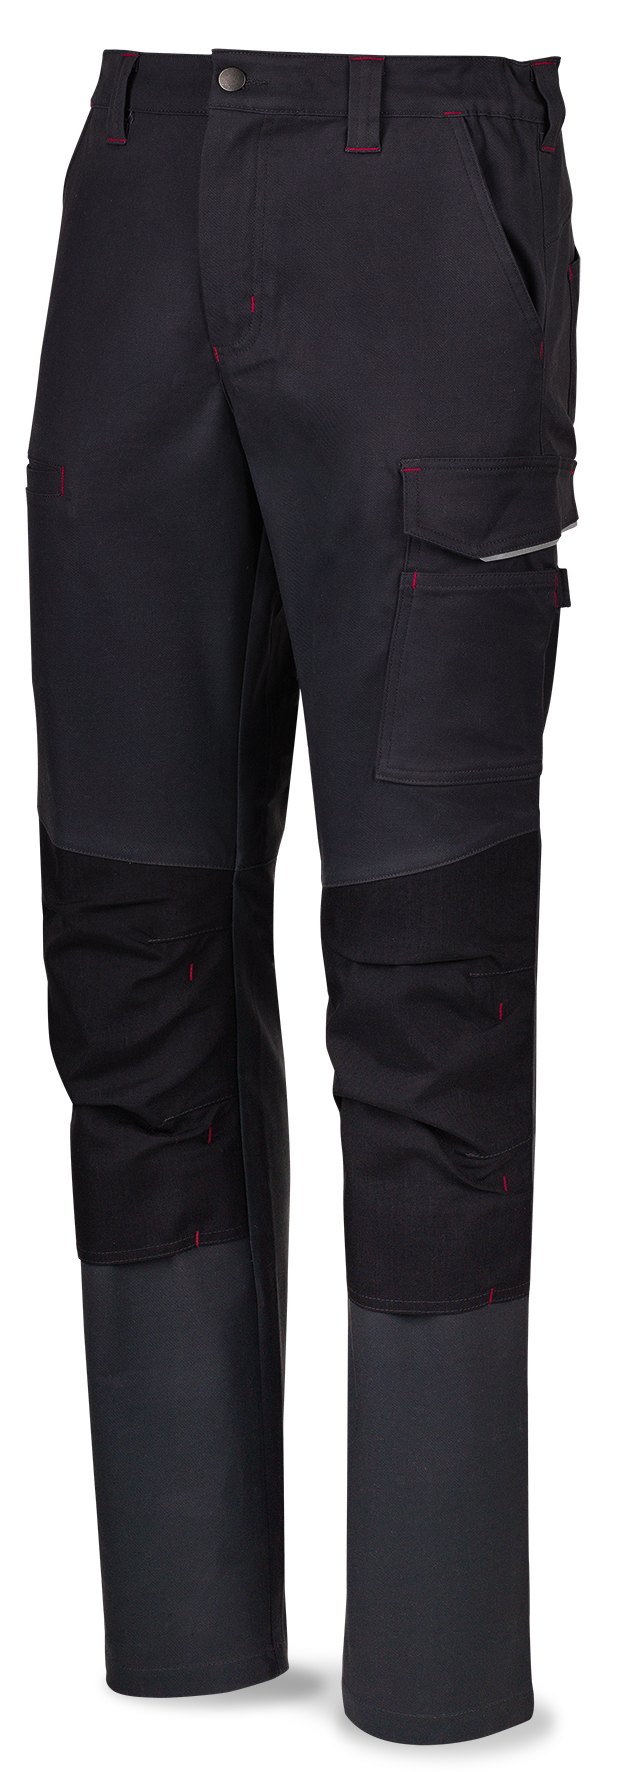 588PSSG Vetements de travail laboral  Pro Series Pantalon STRETCH gris polyester/coton 245 gr. Multipoches